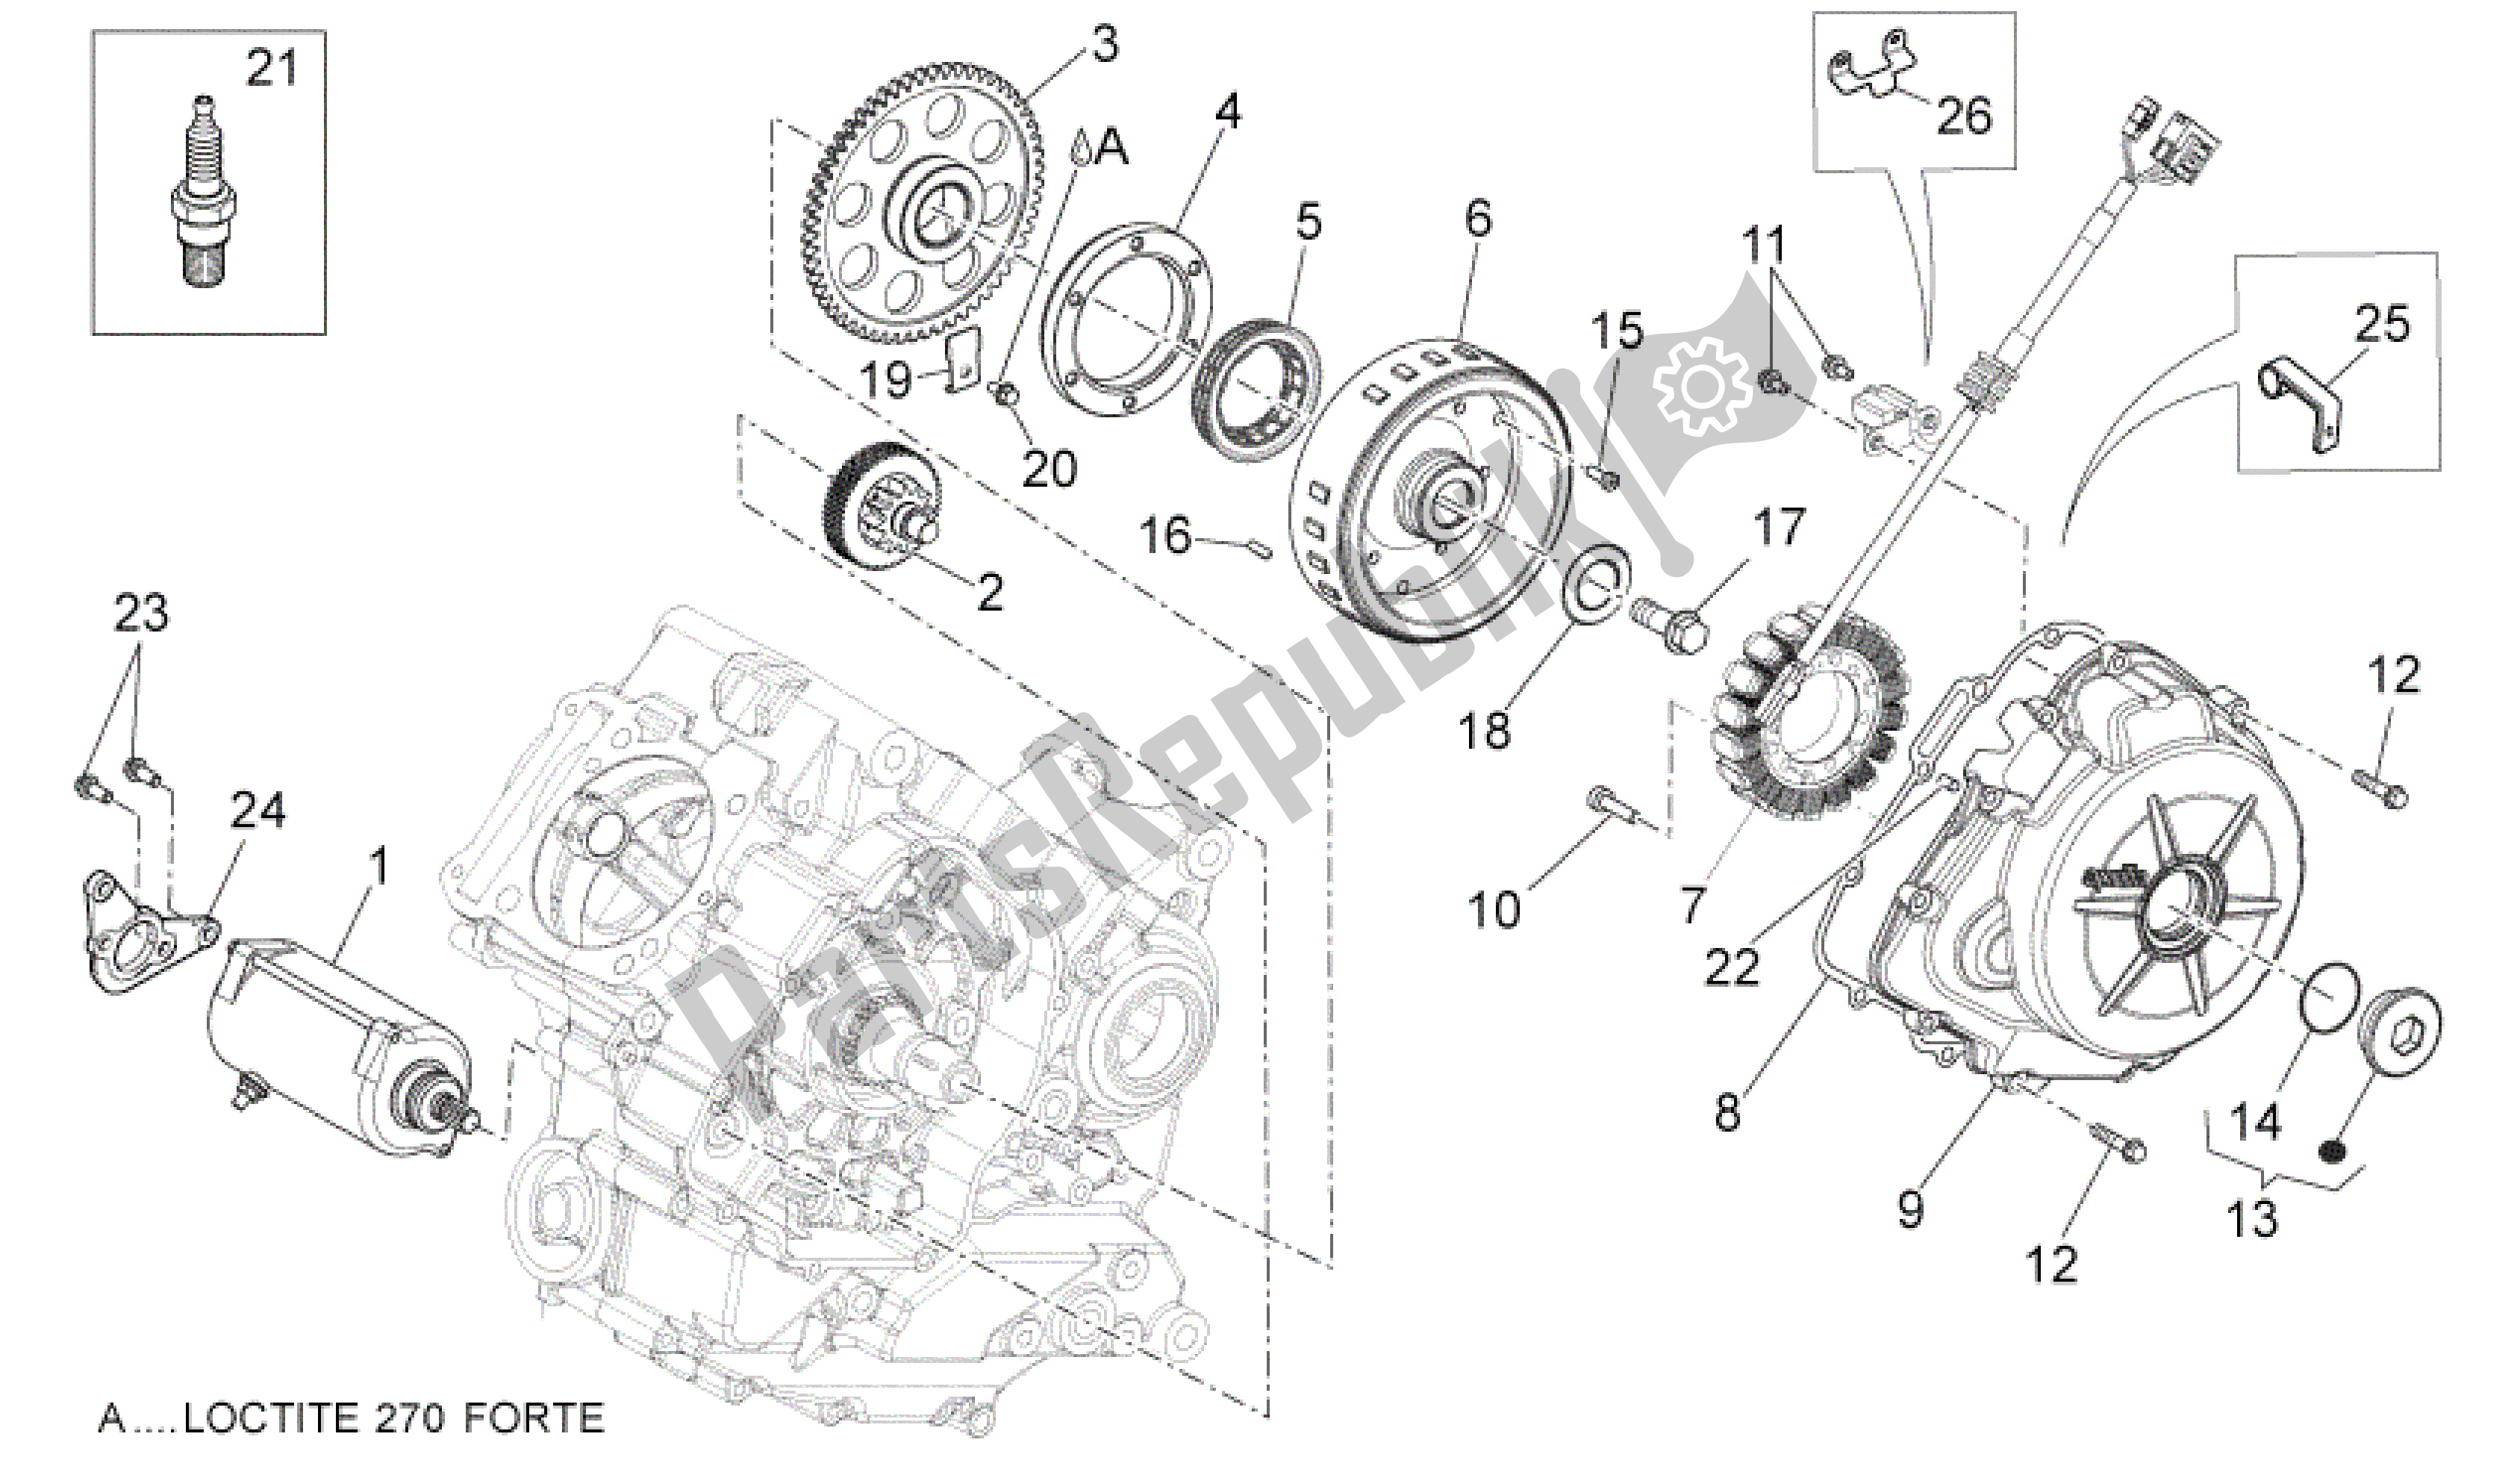 All parts for the Ignition Unit of the Aprilia Dorsoduro 1200 2010 - 2013